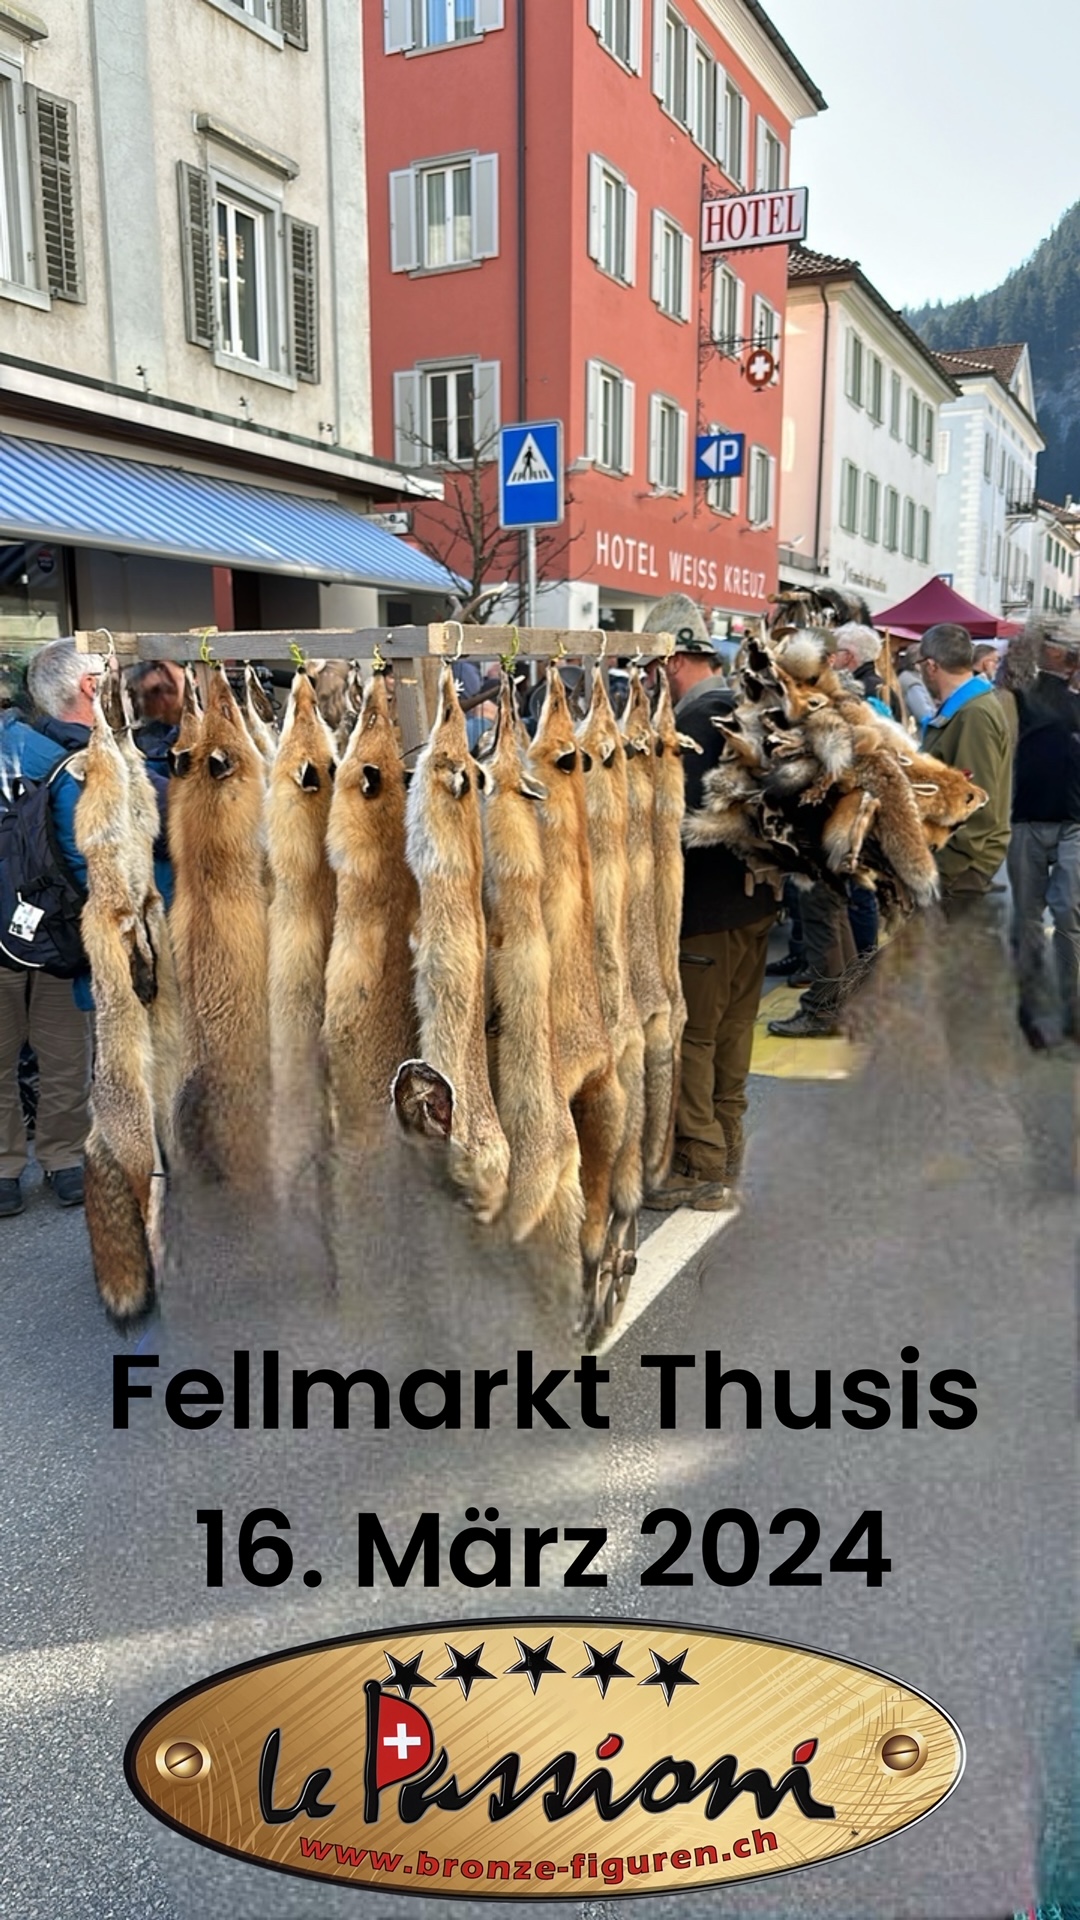 Fellmarkt Thusis